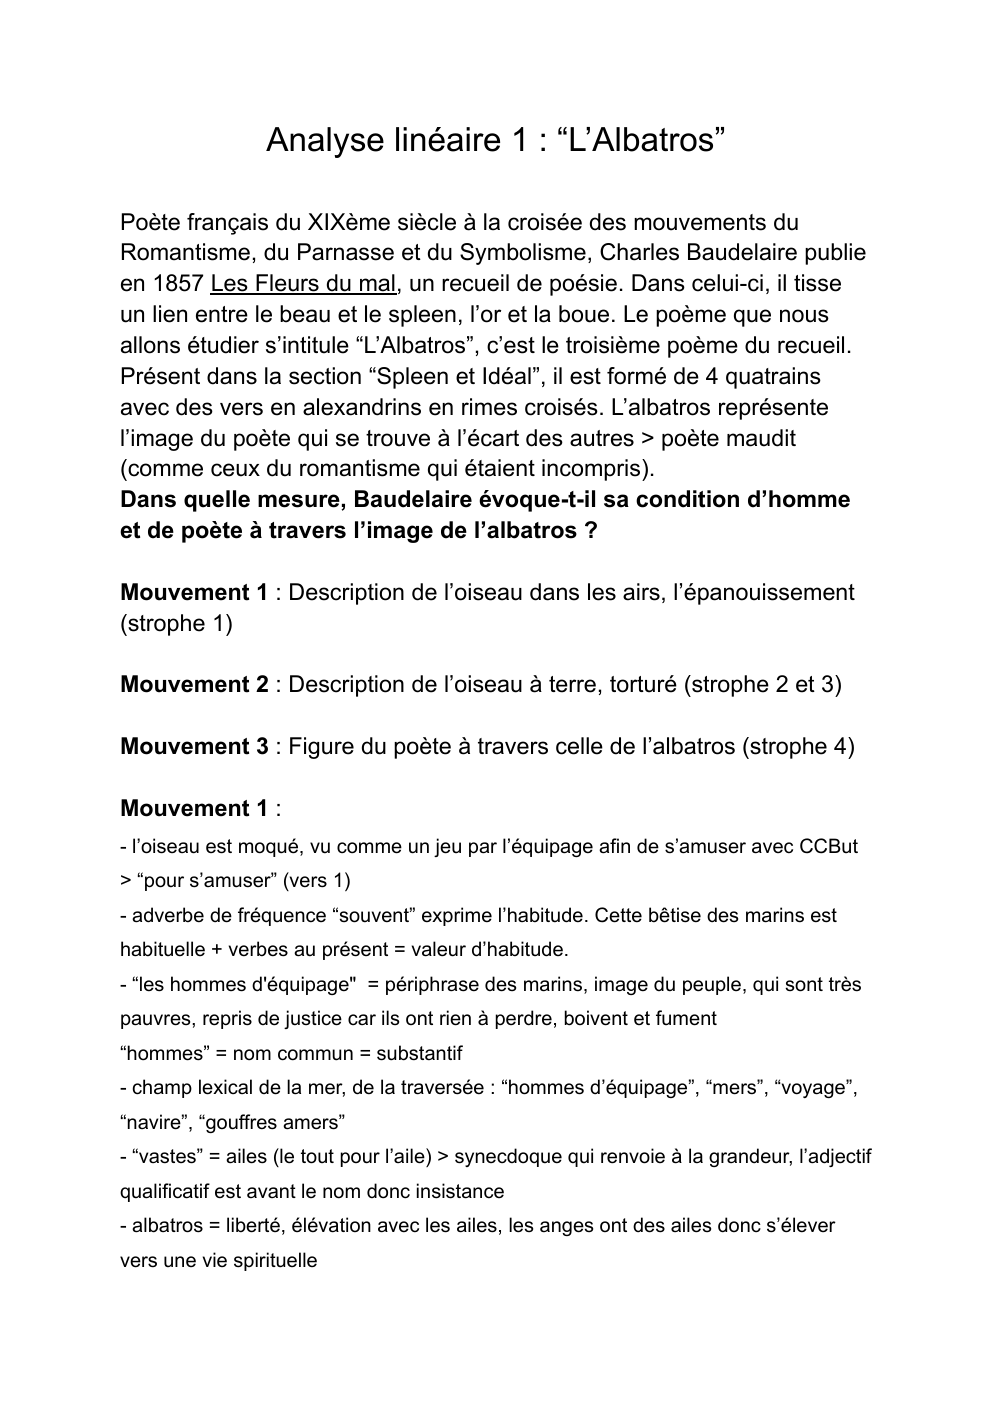 Prévisualisation du document Analyse linéaire de "L'Albatros" de Baudelaire